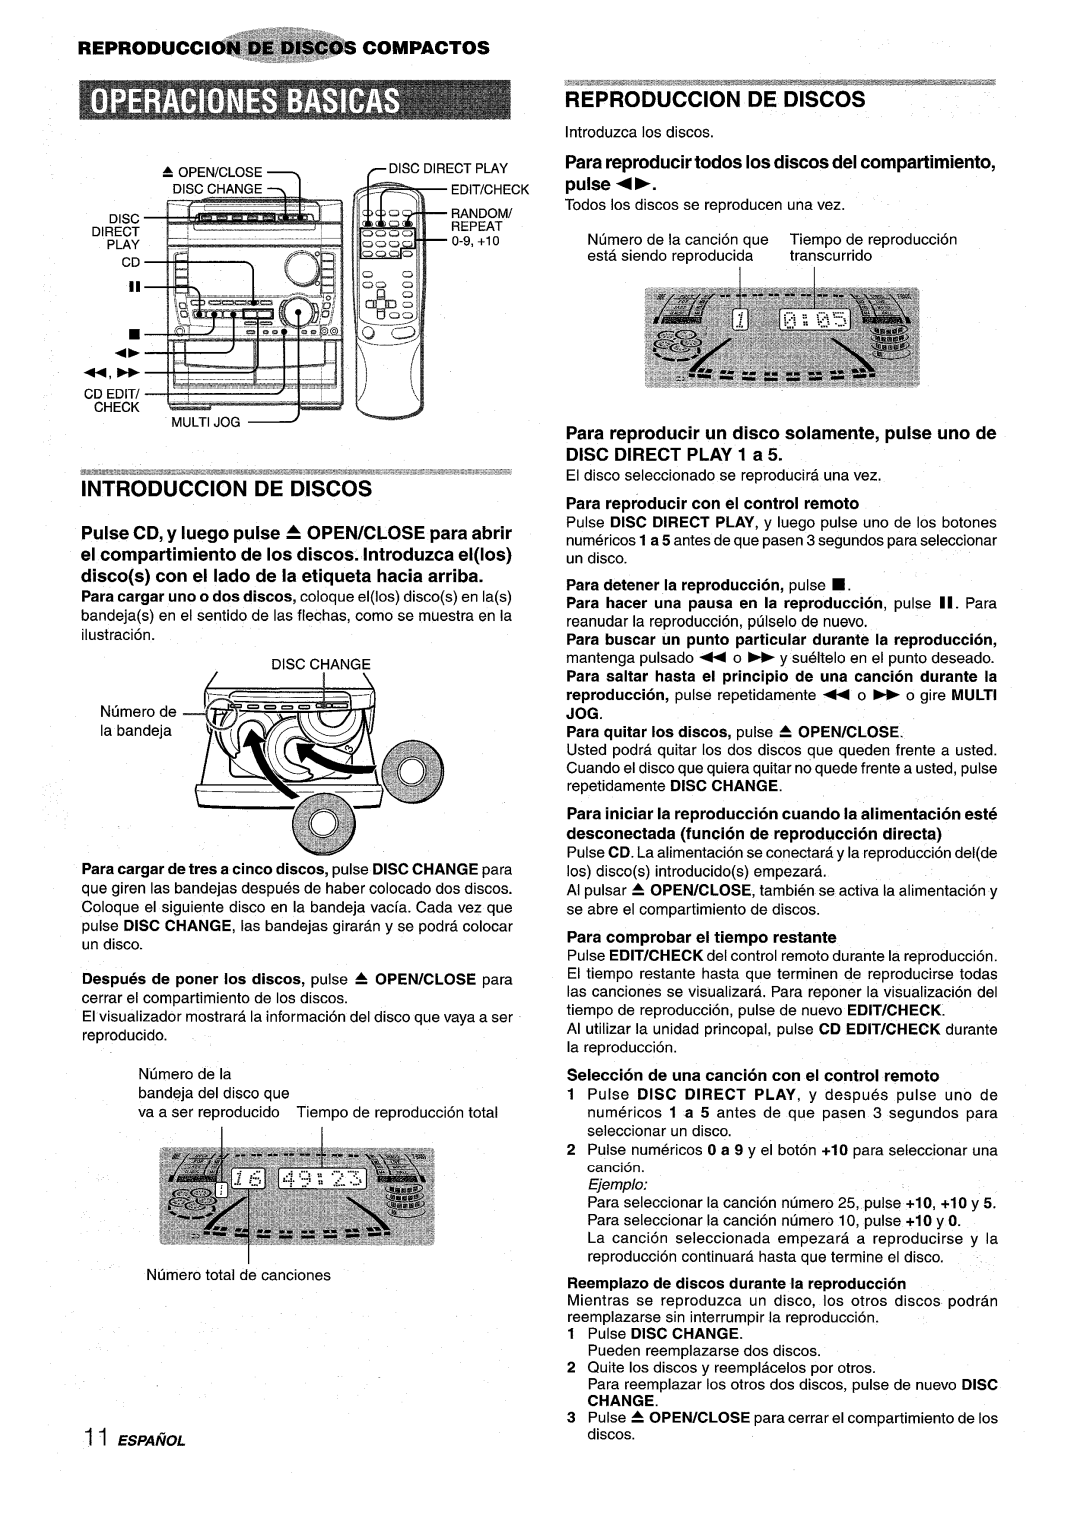 Sony NSX-A959 manual Introduction De Discos, Para reproducer todos Ios discos del compartimiento K pulse 